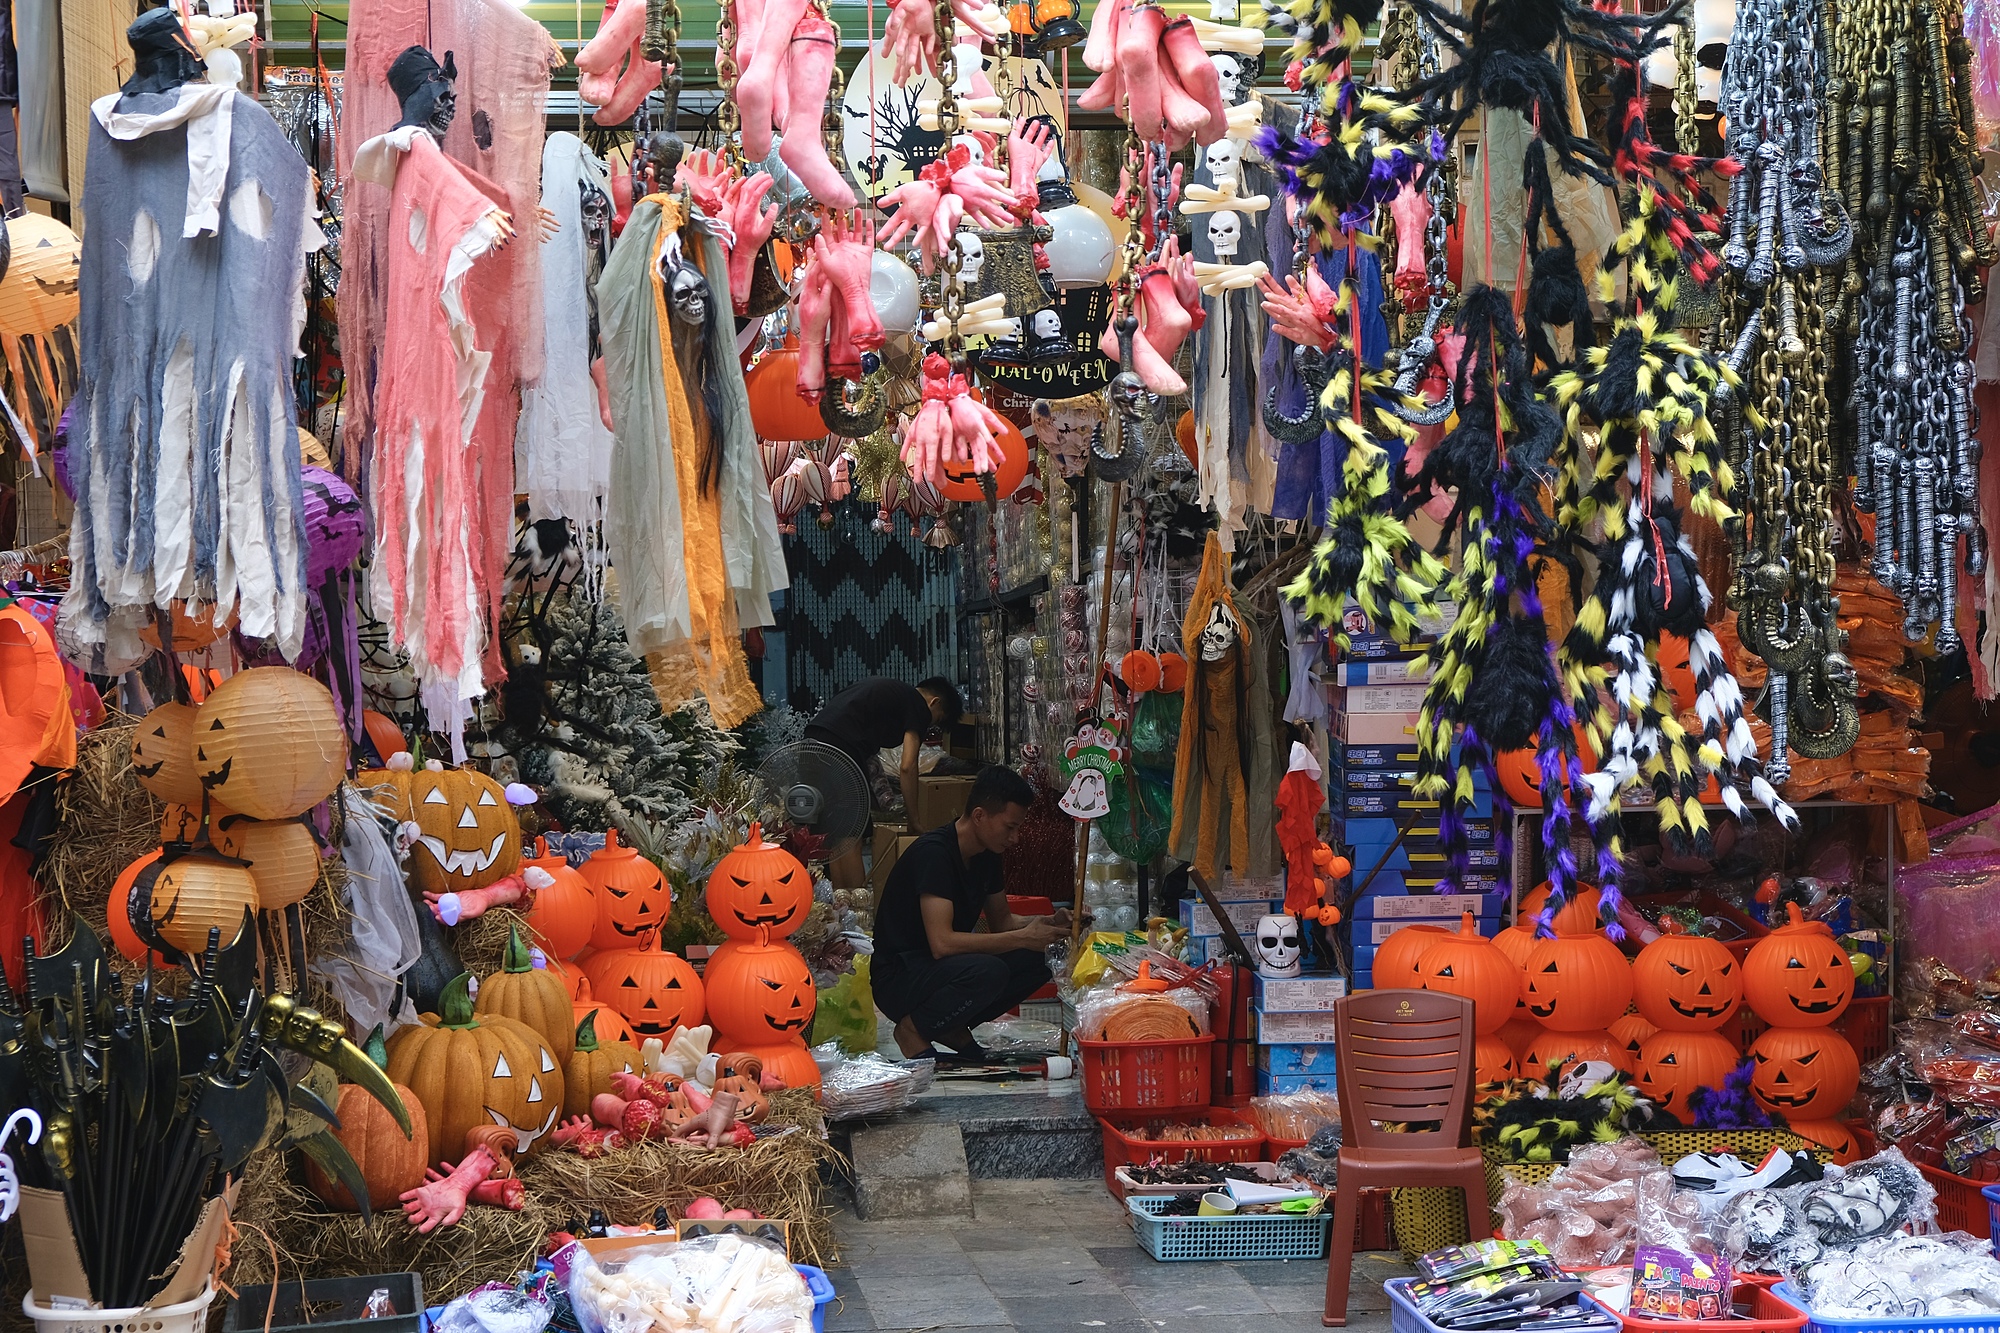 Một cửa hàng trên phố Hàng Mã, quận Hoàn Kiếm bày bán món đồ được tạo hình ghê rợn như bộ xương, đầu lâu, chân tay bôi phẩm đỏ phục vụ lễ hội Halloween, chiều 29/10. Ảnh: Quỳnh Nguyễn